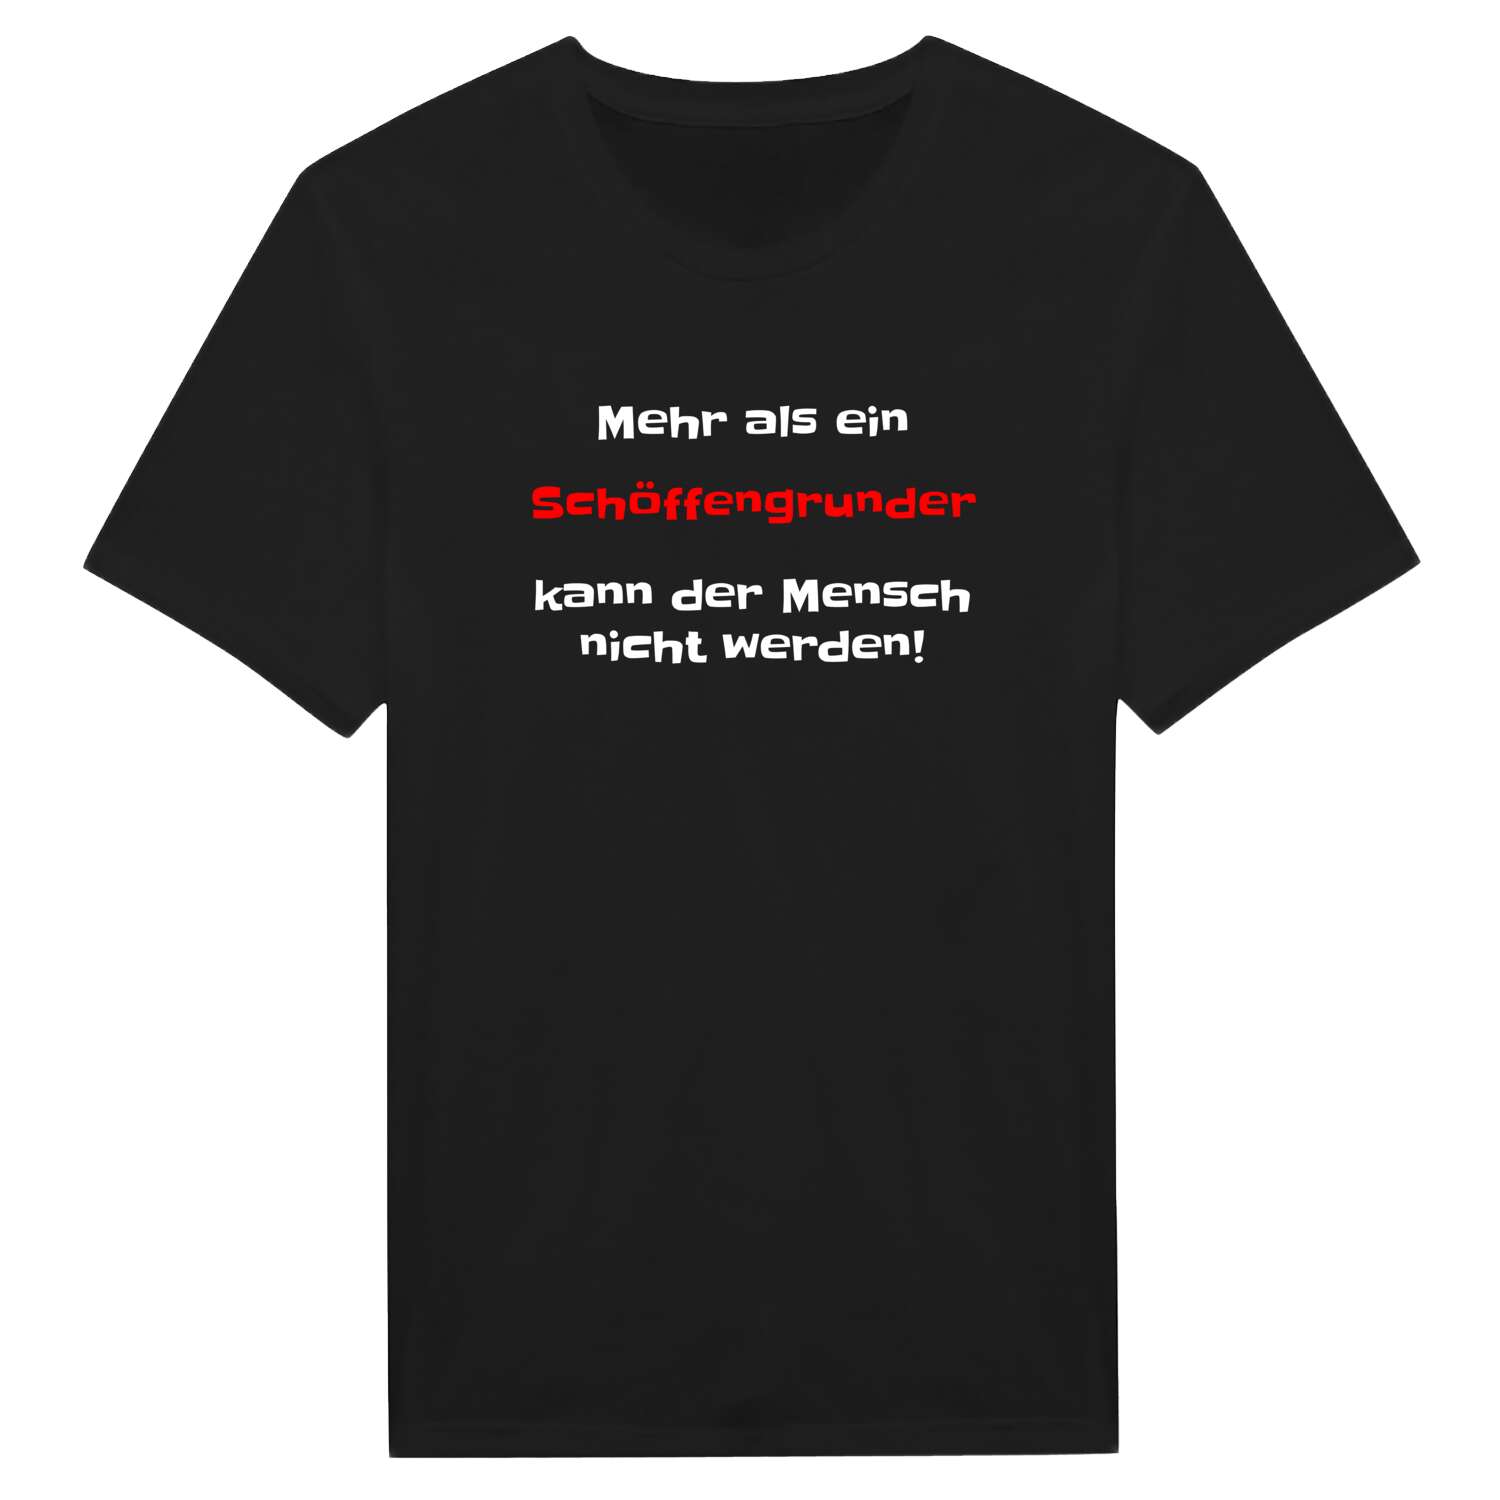 Schöffengrund T-Shirt »Mehr als ein«